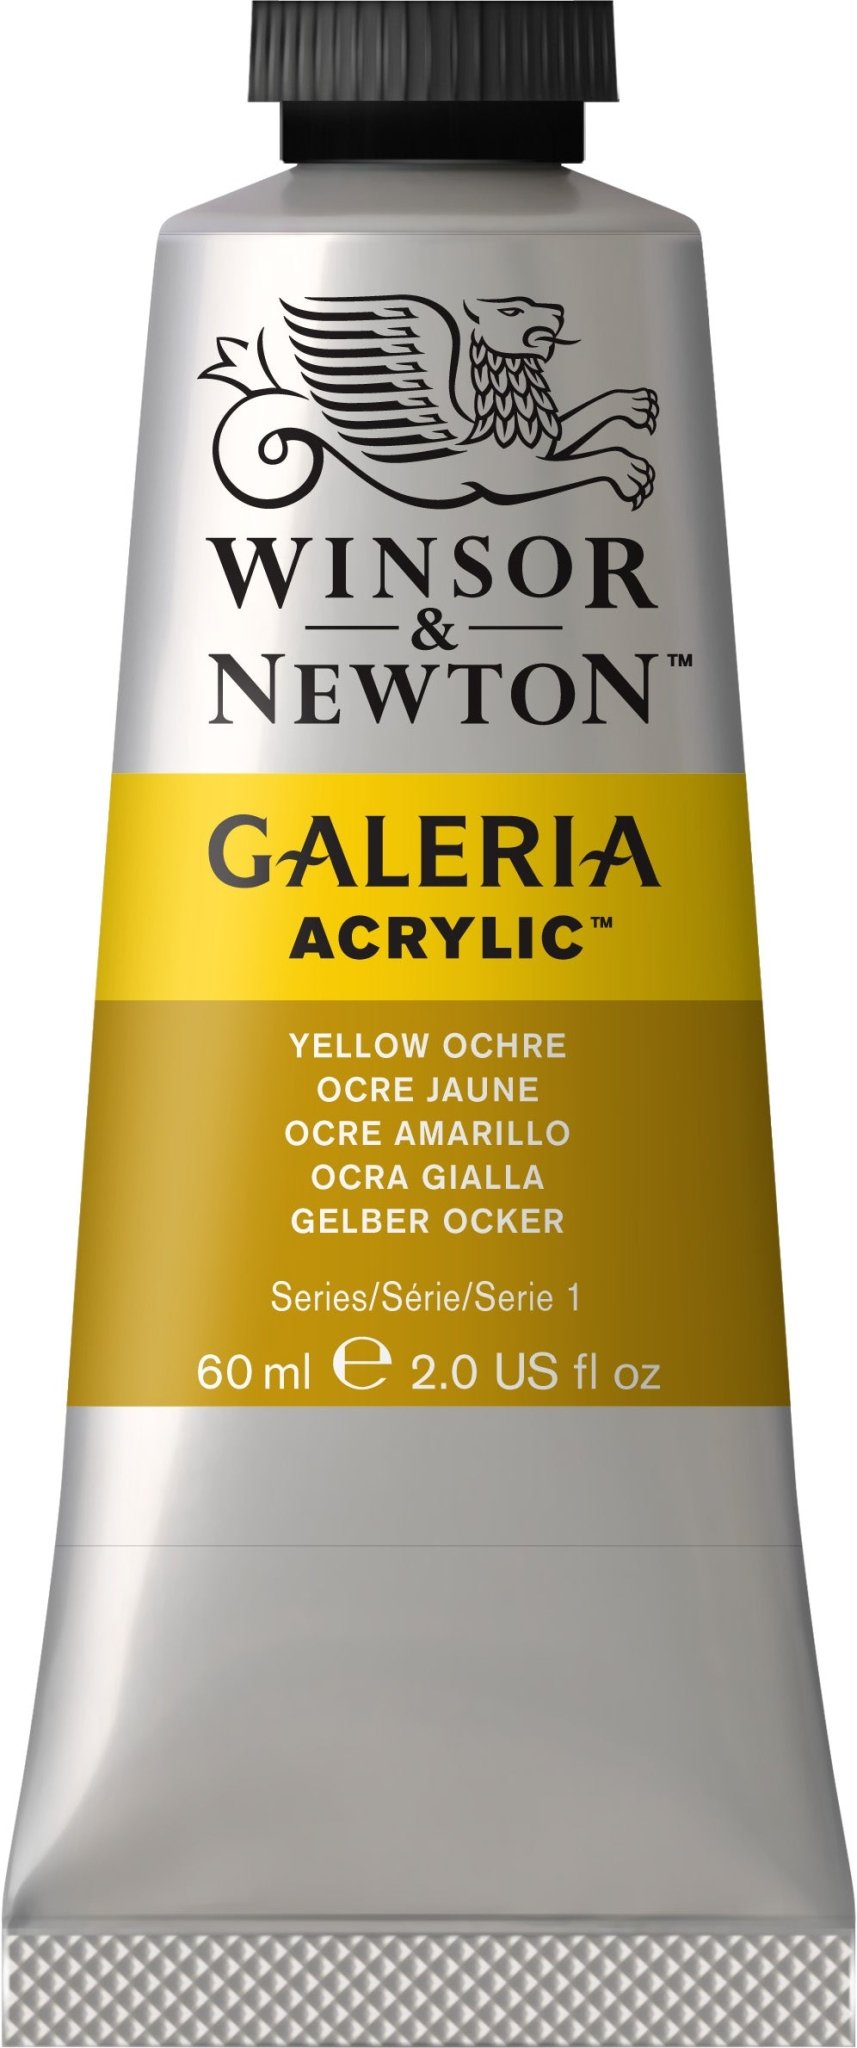 W & N Galeria Acrylic 60ml Yellow Ochre - theartshop.com.au